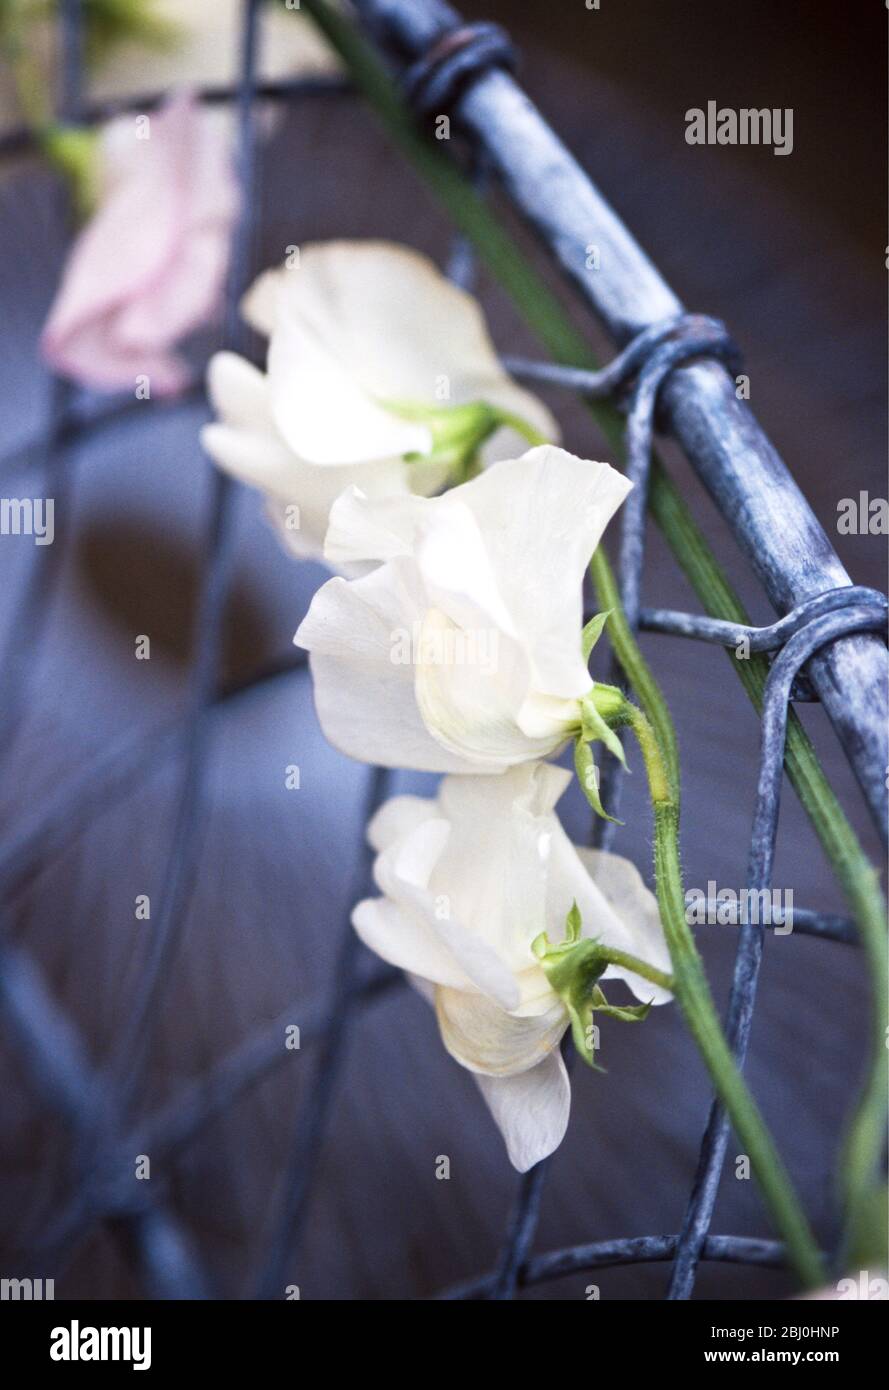 Süße Erbsenblumen auf der Rückseite von Draht Stuhl als Dekoration für Sommerabend Gartenparty gebunden - Stockfoto